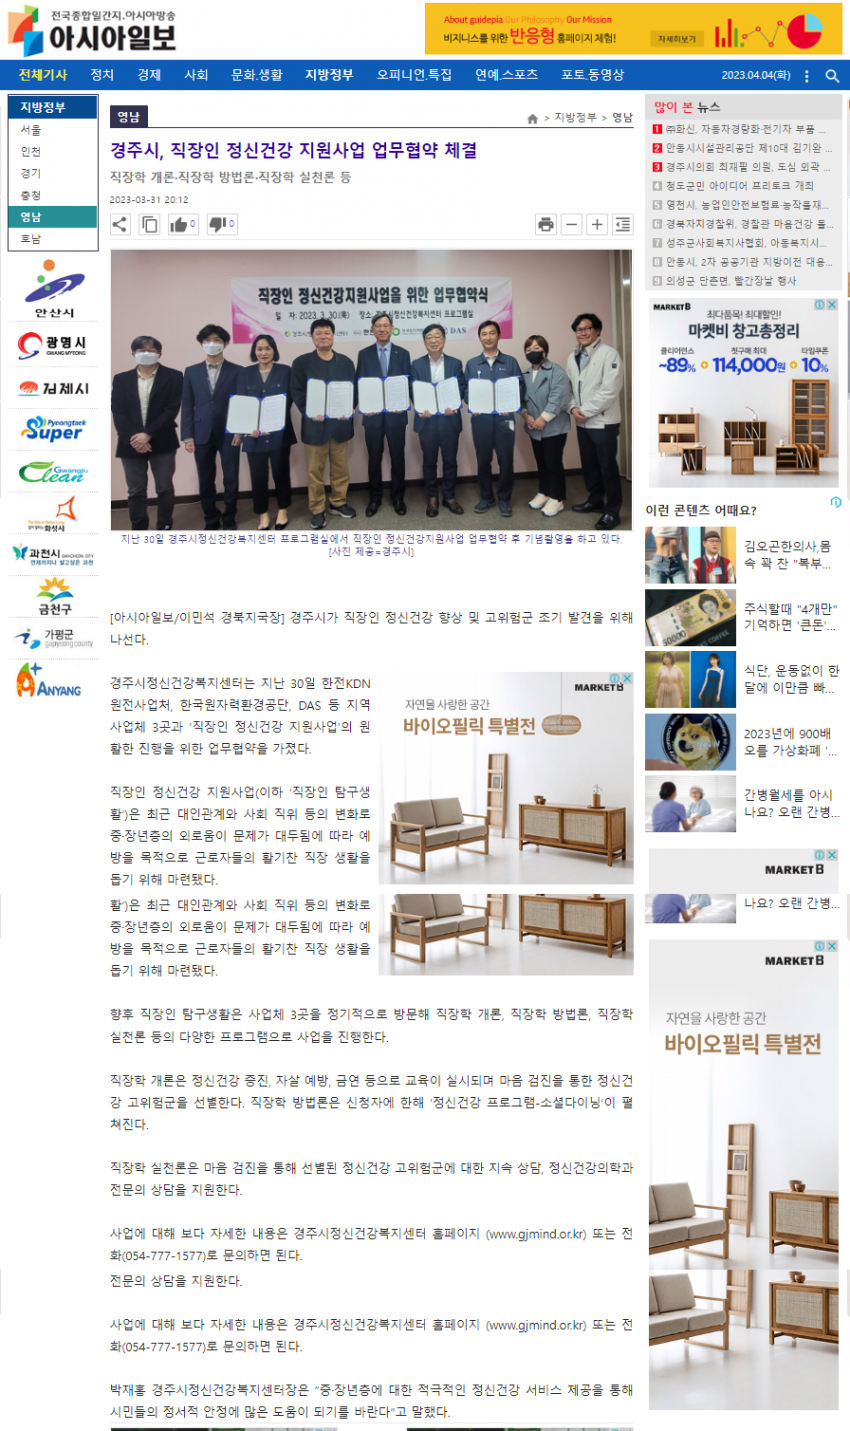 경주시, 직장인 정신건강사업 사업체 3곳과 업무협약_아시아일보.png